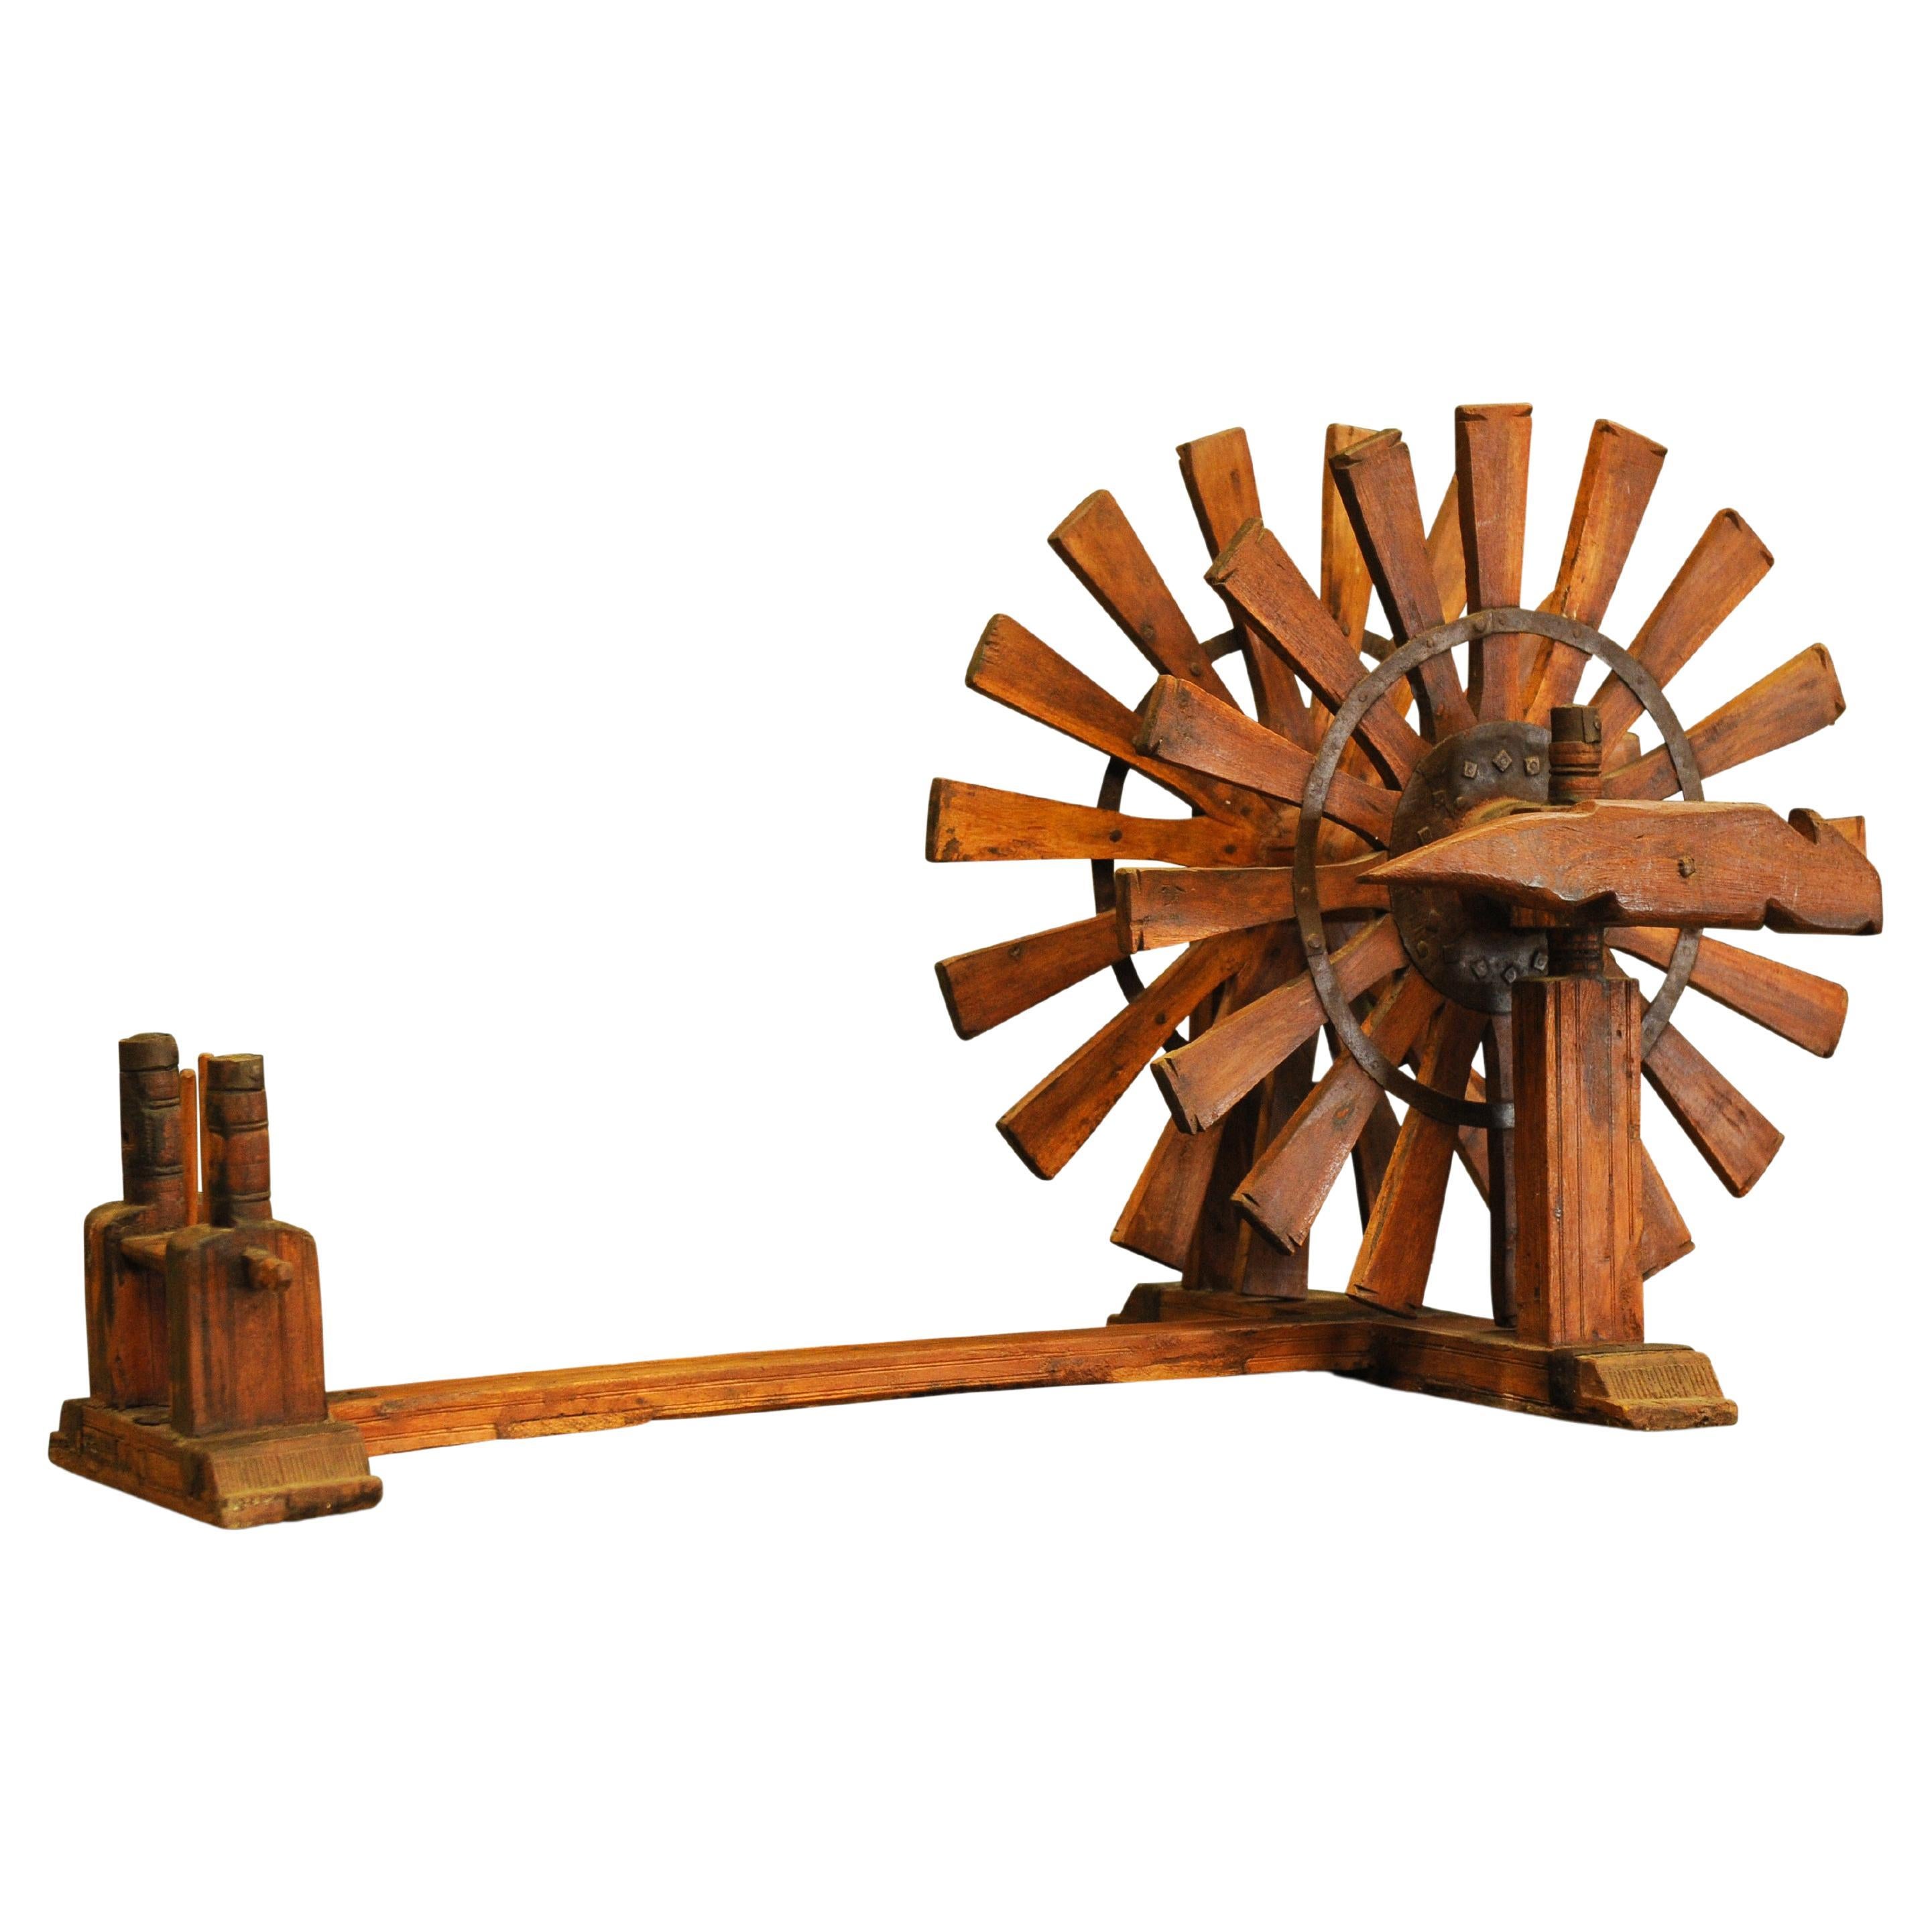 Ein schönes Beispiel für ein antikes handgefertigtes indisches Hartholz-Spinnrad oder Charka aus dem frühen 20.

Das Tisch- oder Bodencharkha ist eine der ältesten bekannten Formen des Spinnrads. Die Charkha arbeitet mit einem Antriebsrad, das von